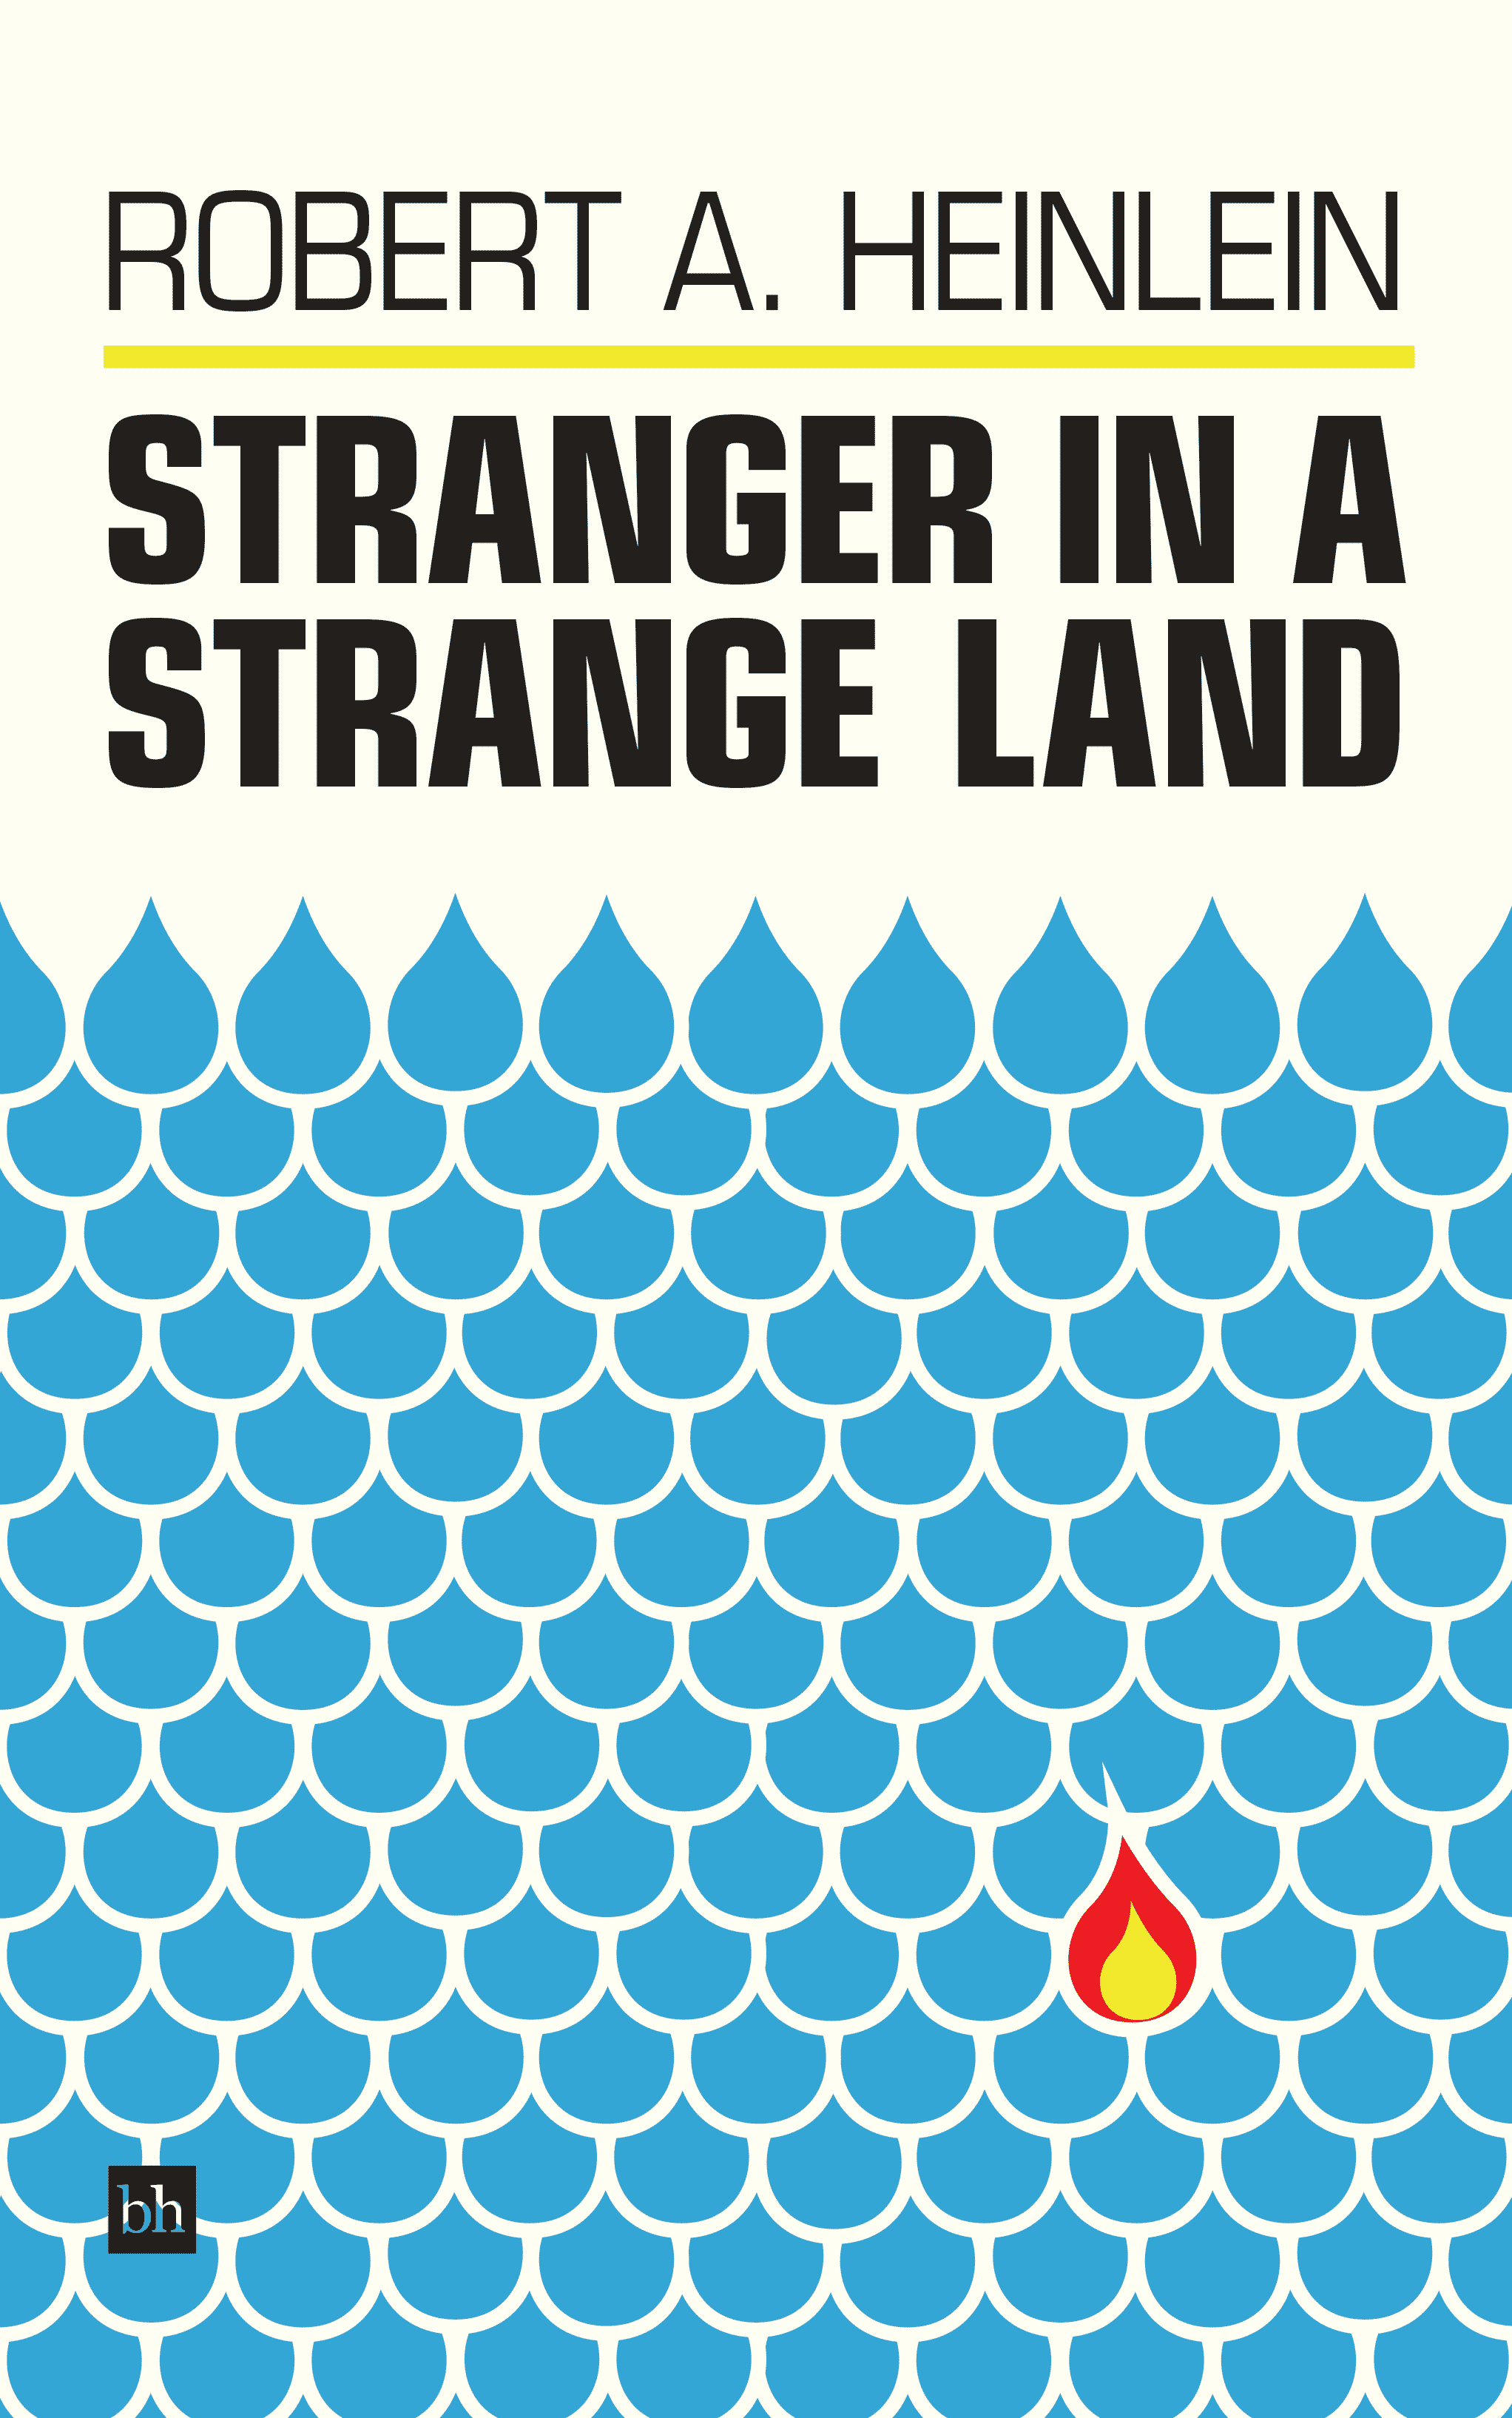 Stranger In A Strange Land by Robert A. Heinlein